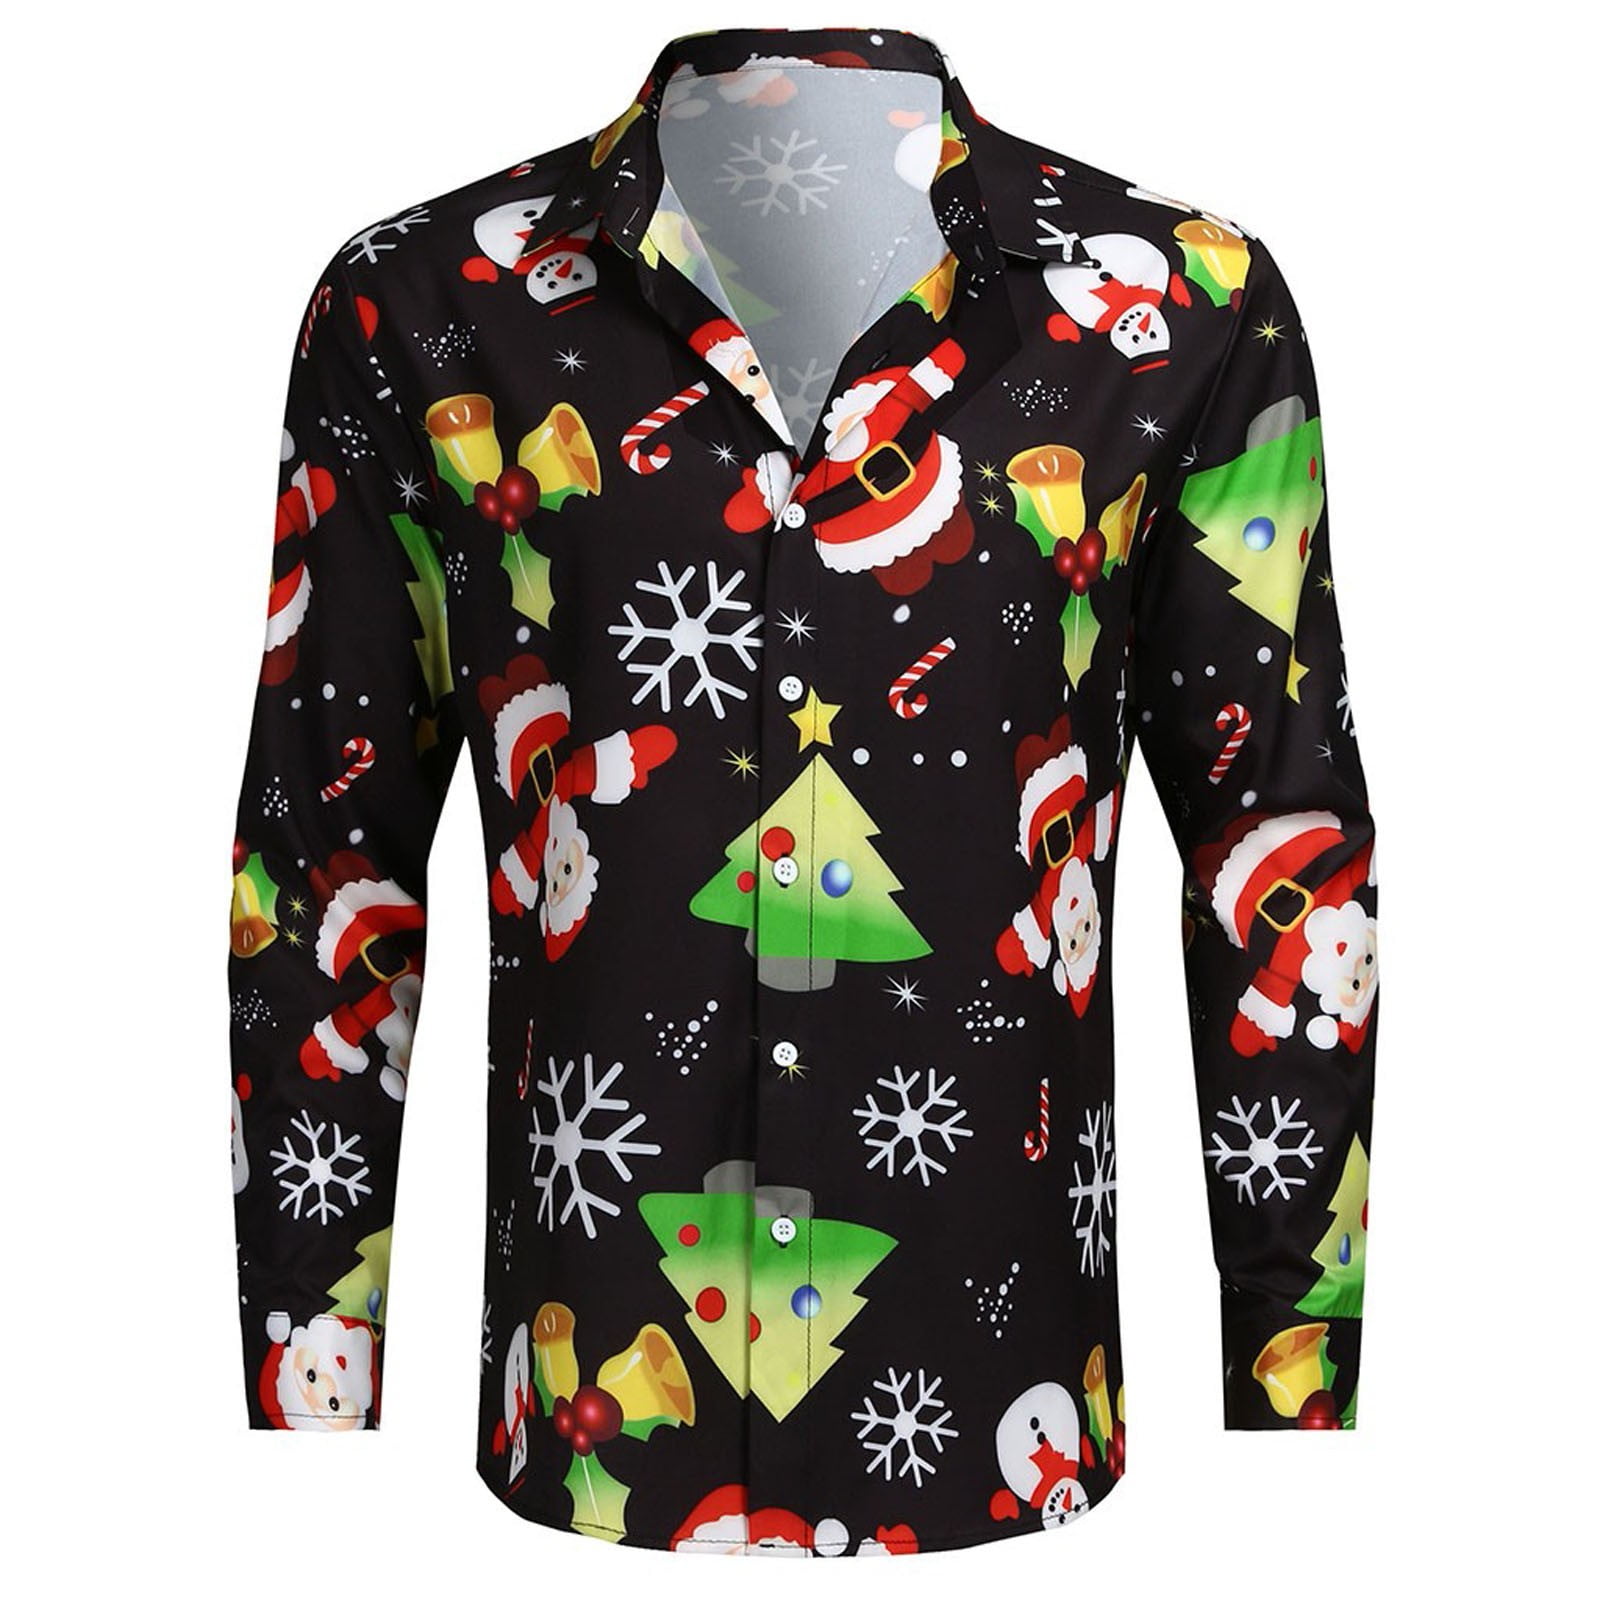 Ugly Christmas Button Up Dress Shirt for Men - Ugly Christmas Shirt ...